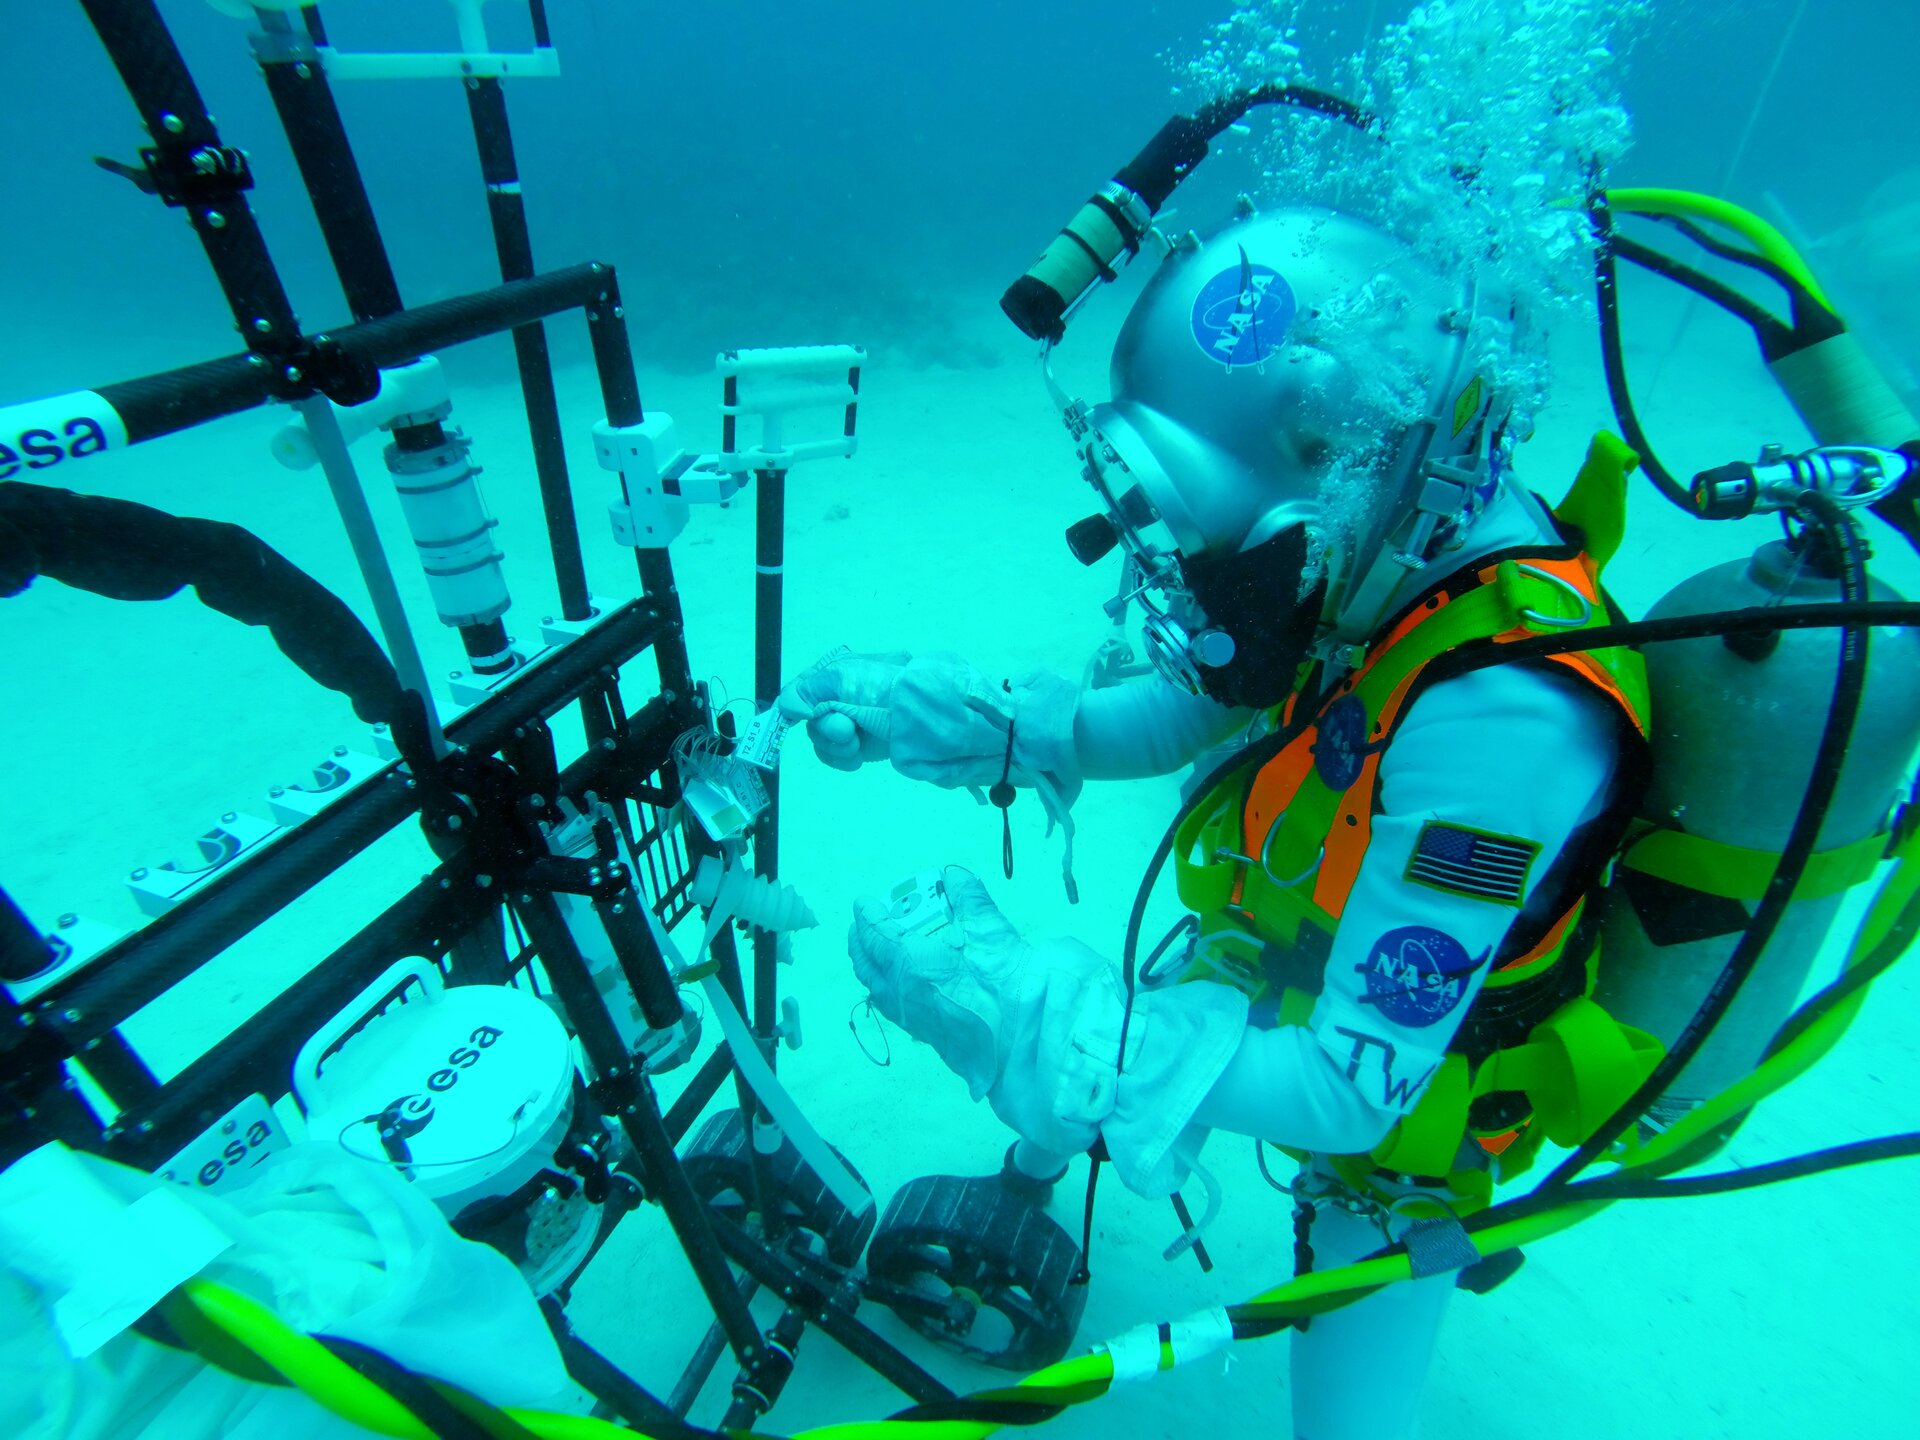 Testing ESA prototypes for geological sampling tools underwater